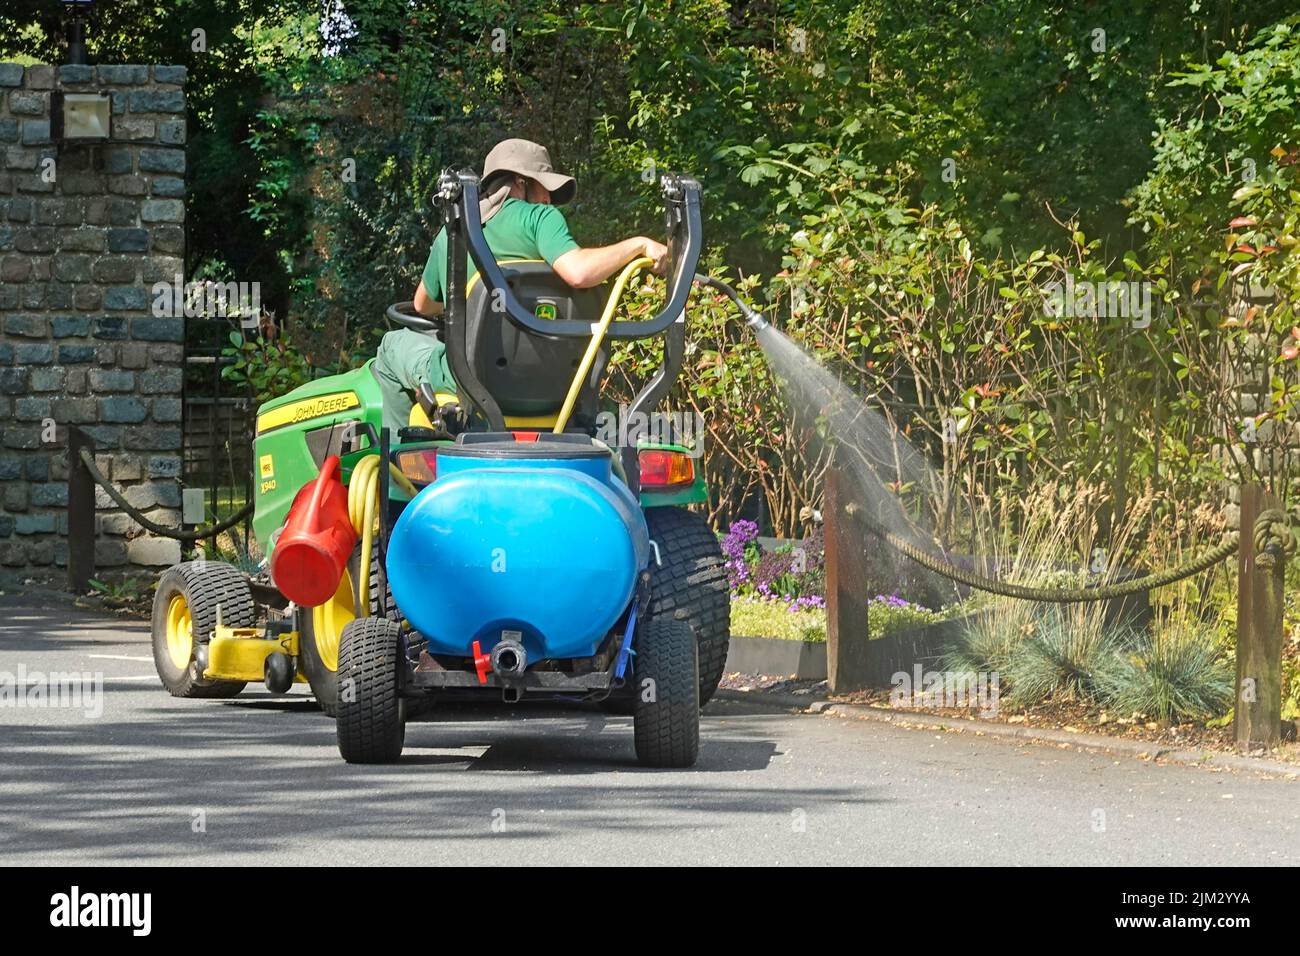 Jardinier assis en hauteur sur un mini-tracteur John Deere tractant une mini-remorque de camion-citerne à eau pompée bleue pulvérisant des fleurs dans l'hôtel Country Estate Angleterre Royaume-Uni Banque D'Images